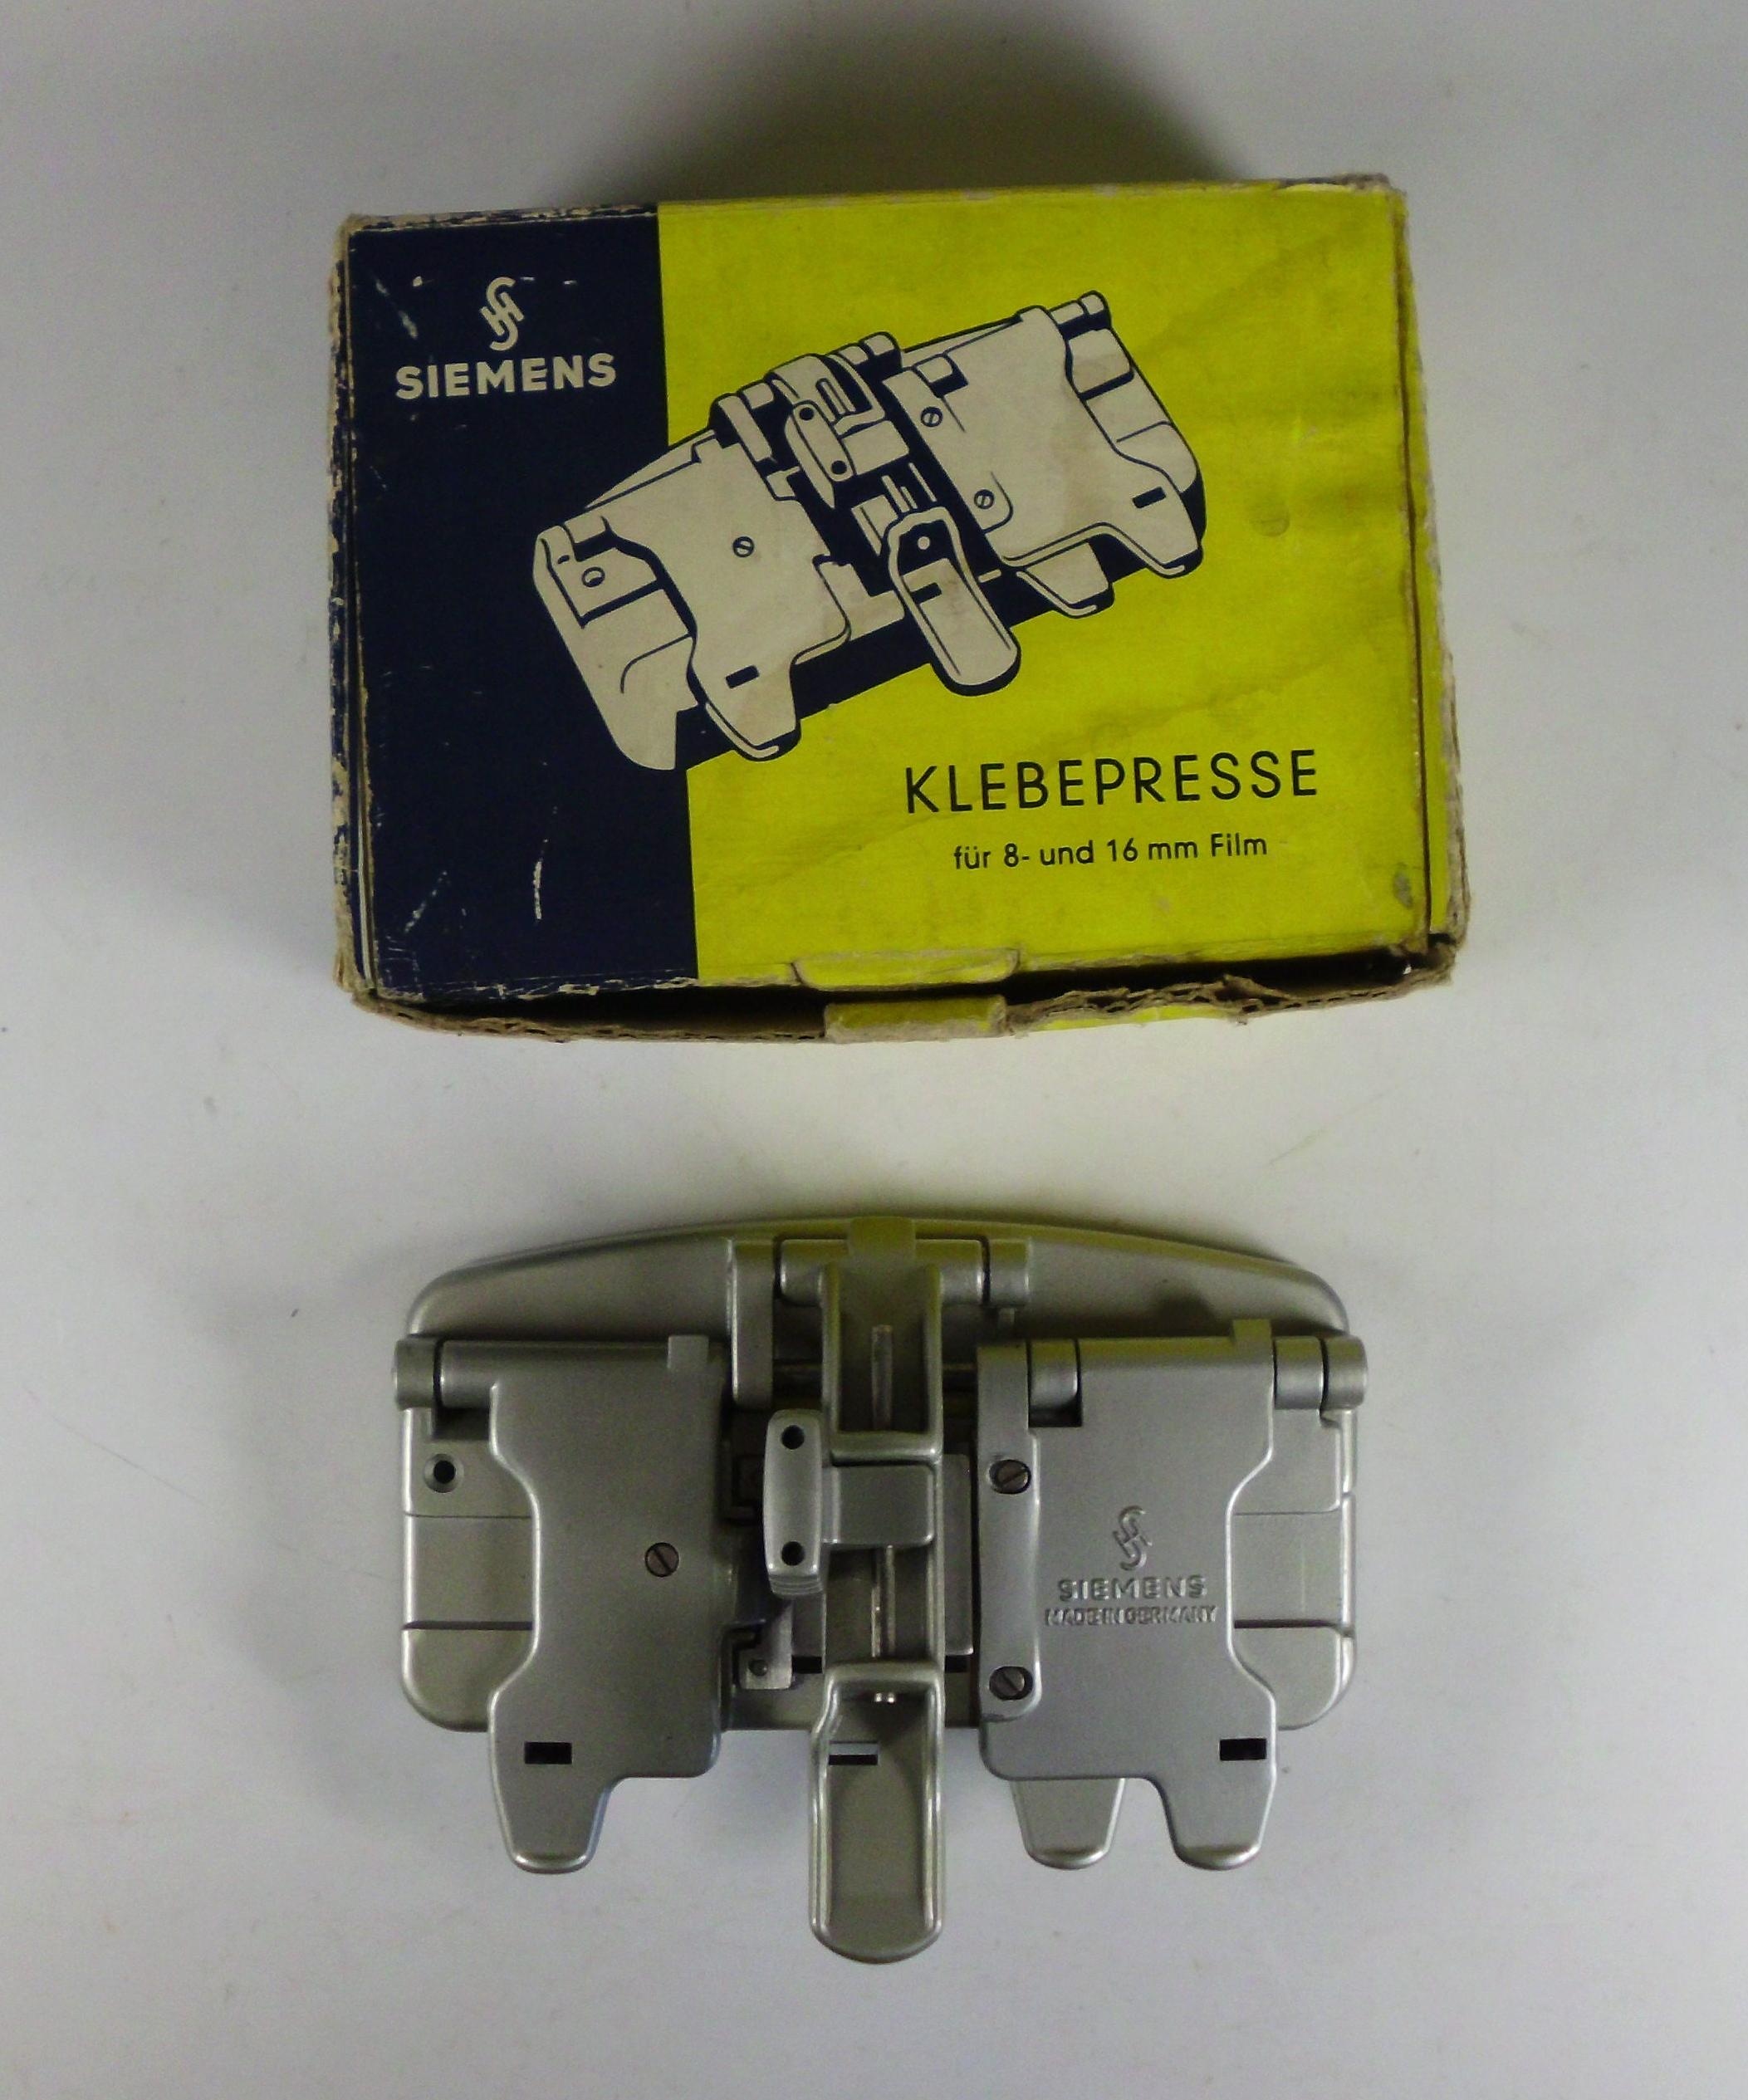 Klebepresse für 8- und 16-mm-Film mit Schachtel (DampfLandLeute - Museum Eslohe CC BY-NC-SA)